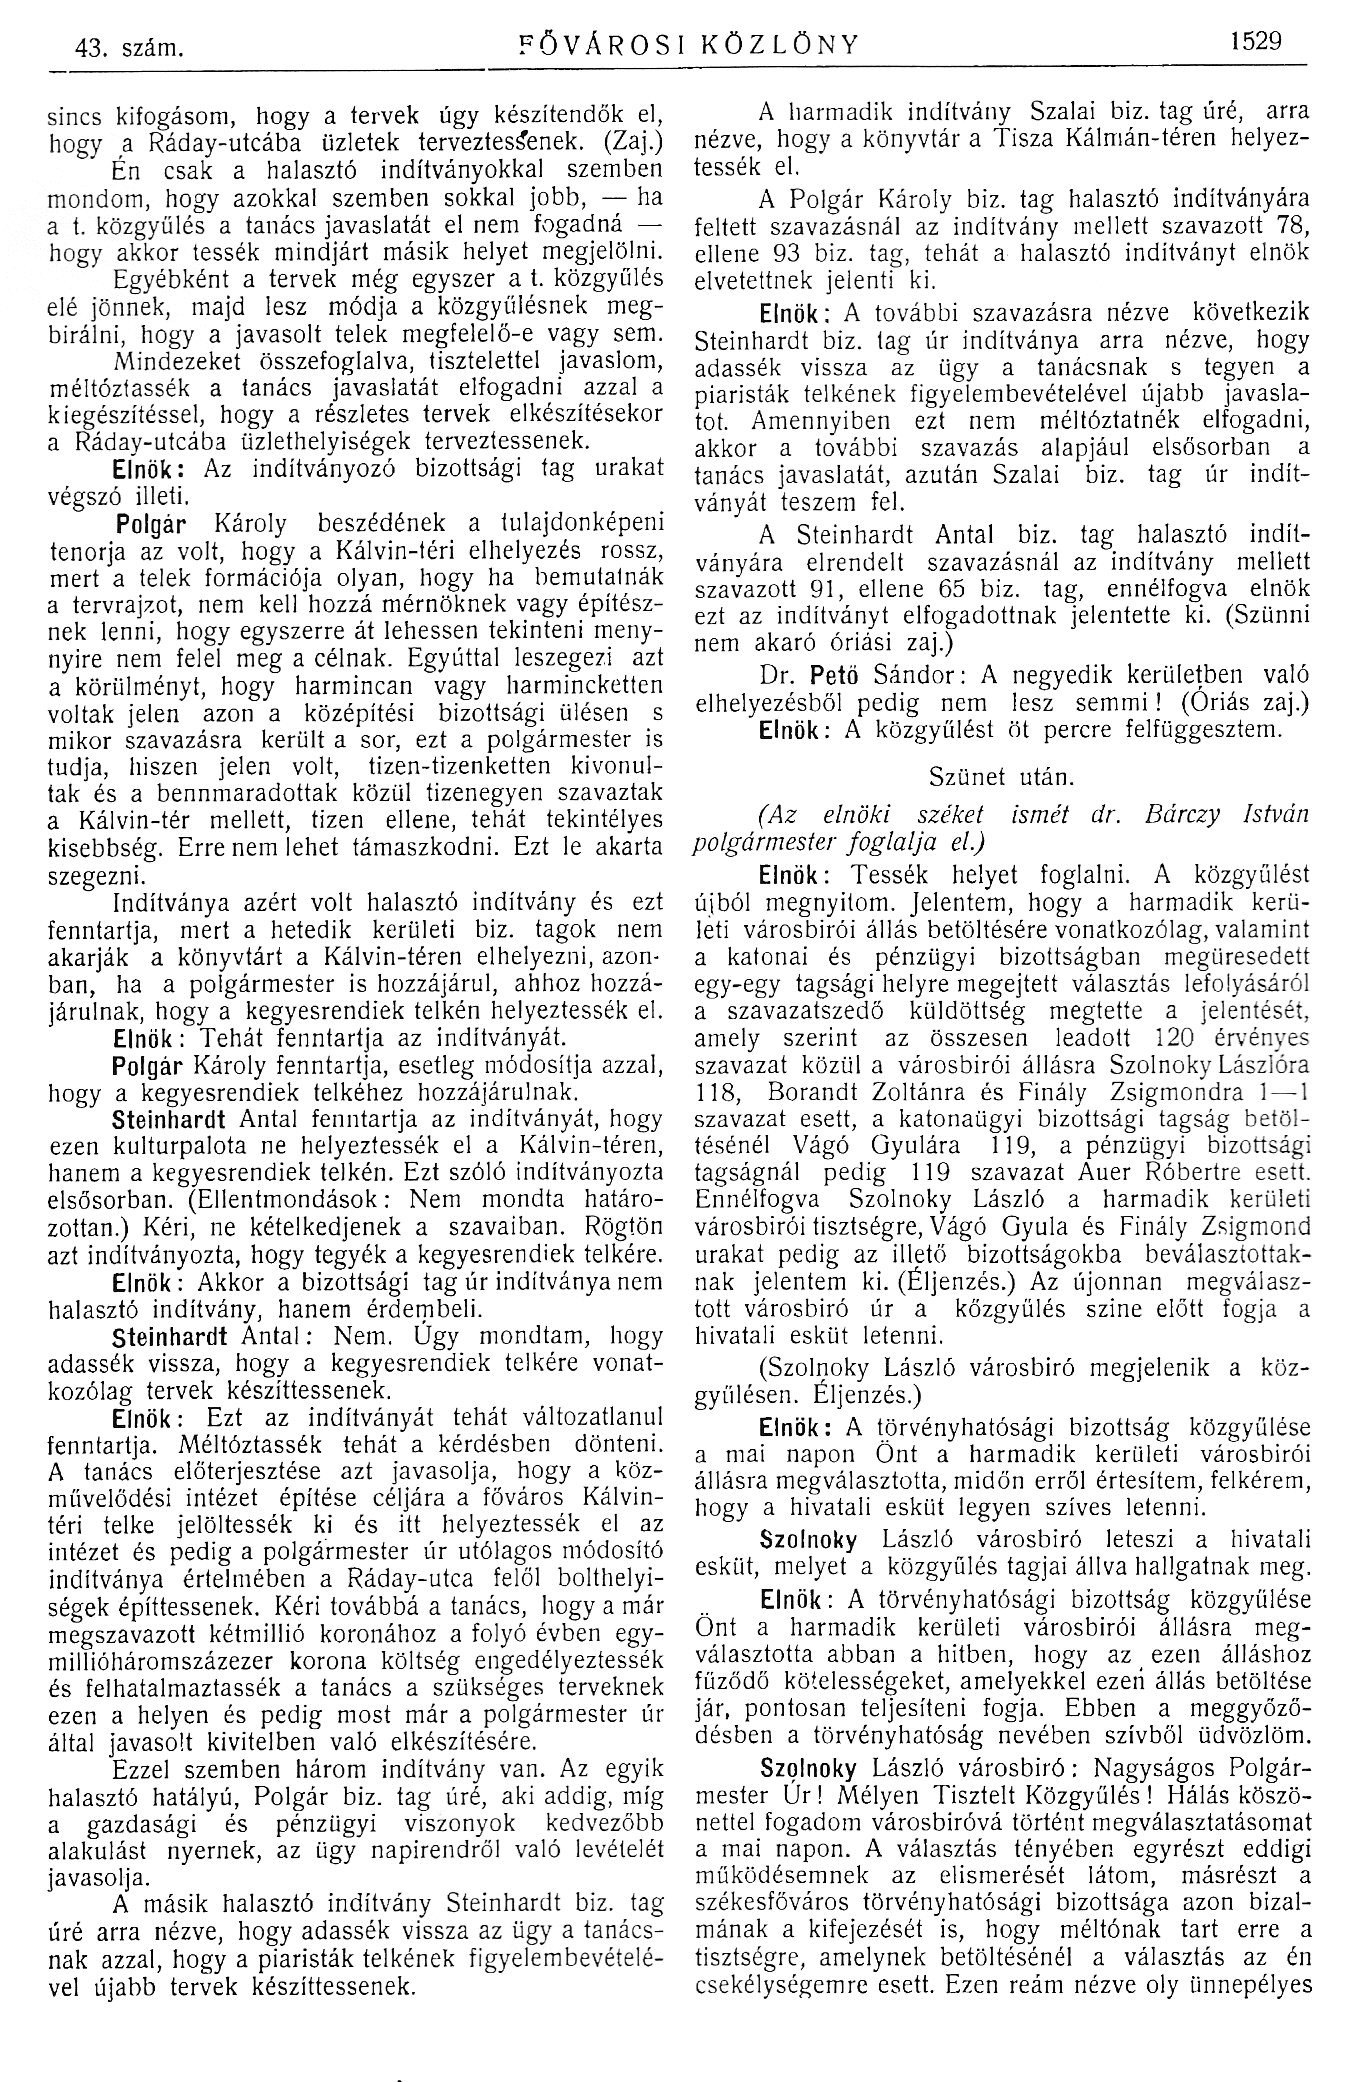 1914_05_27_Fővárosi Közlöny, 1914. 1529. p. 